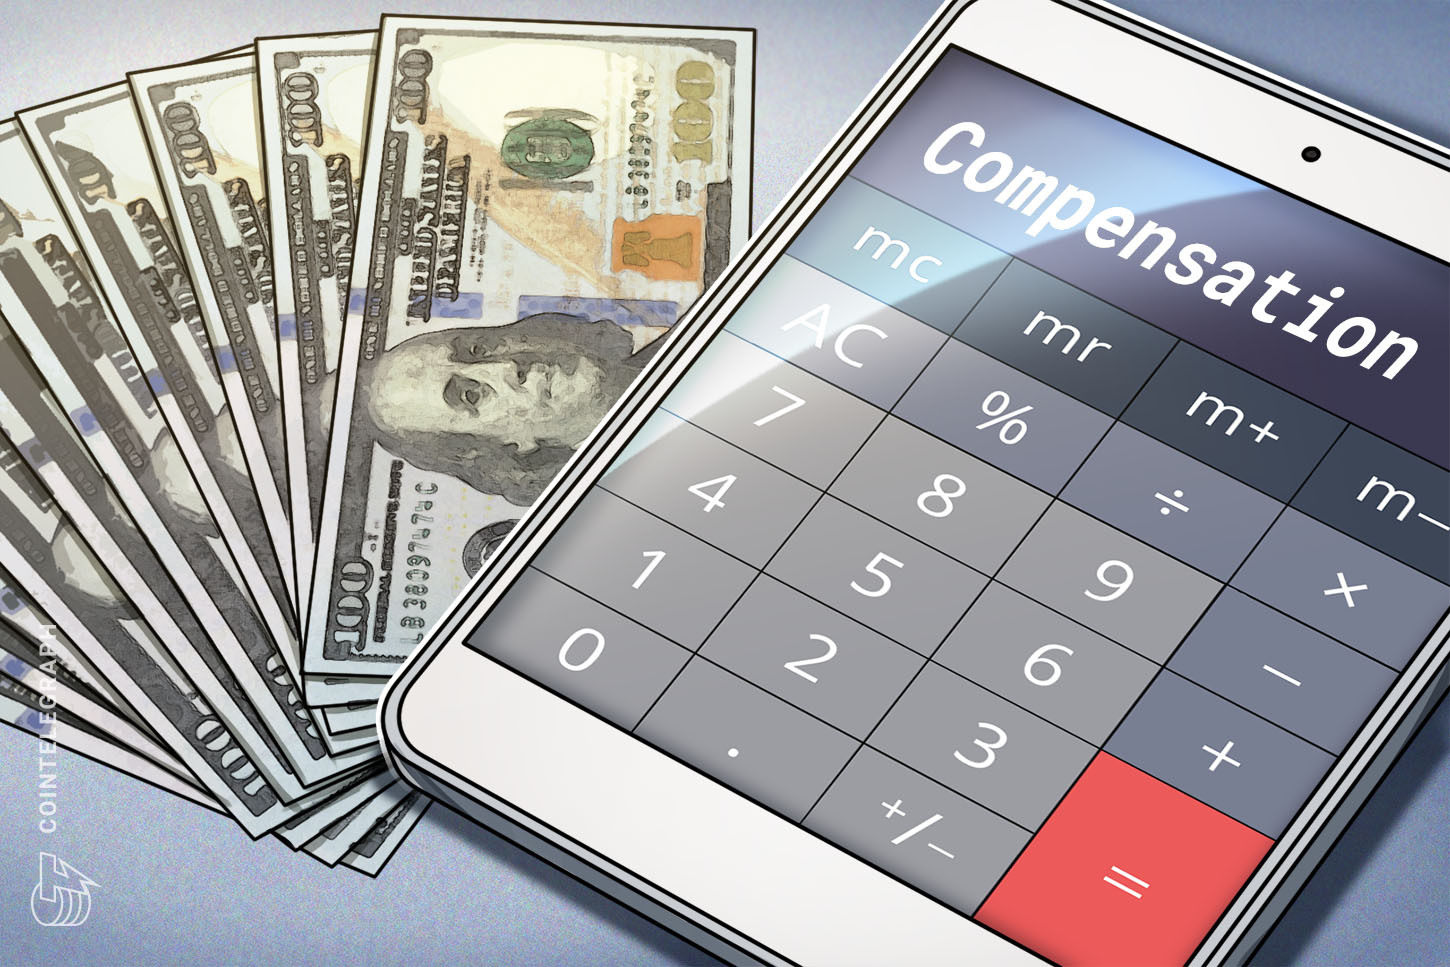  Platypus Finance crea un portal de compensación para usuarios tras el ataque de USD 9.1 millones 